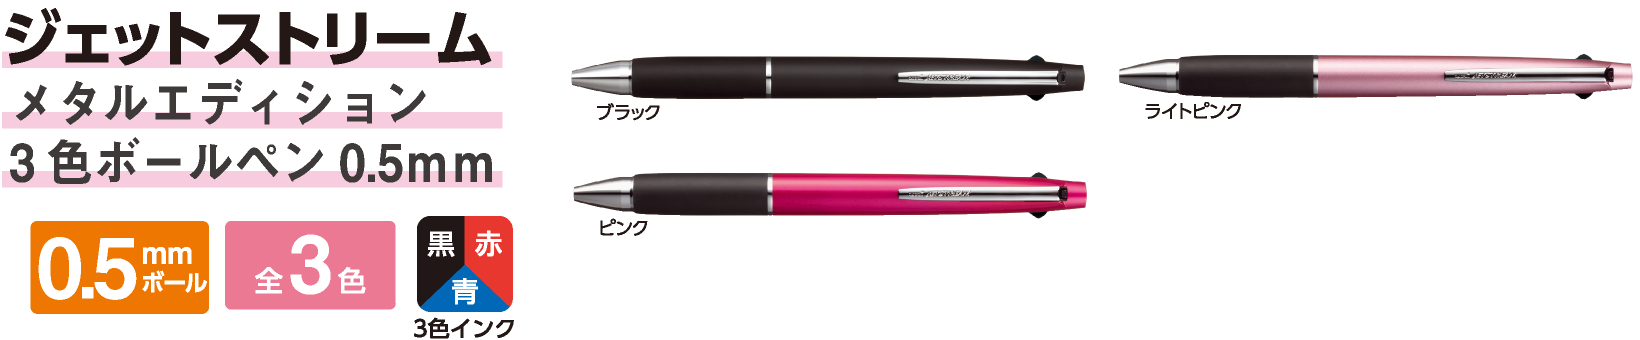 ジェットストリーム メタルエディション 3色ボールペン 0.5mm